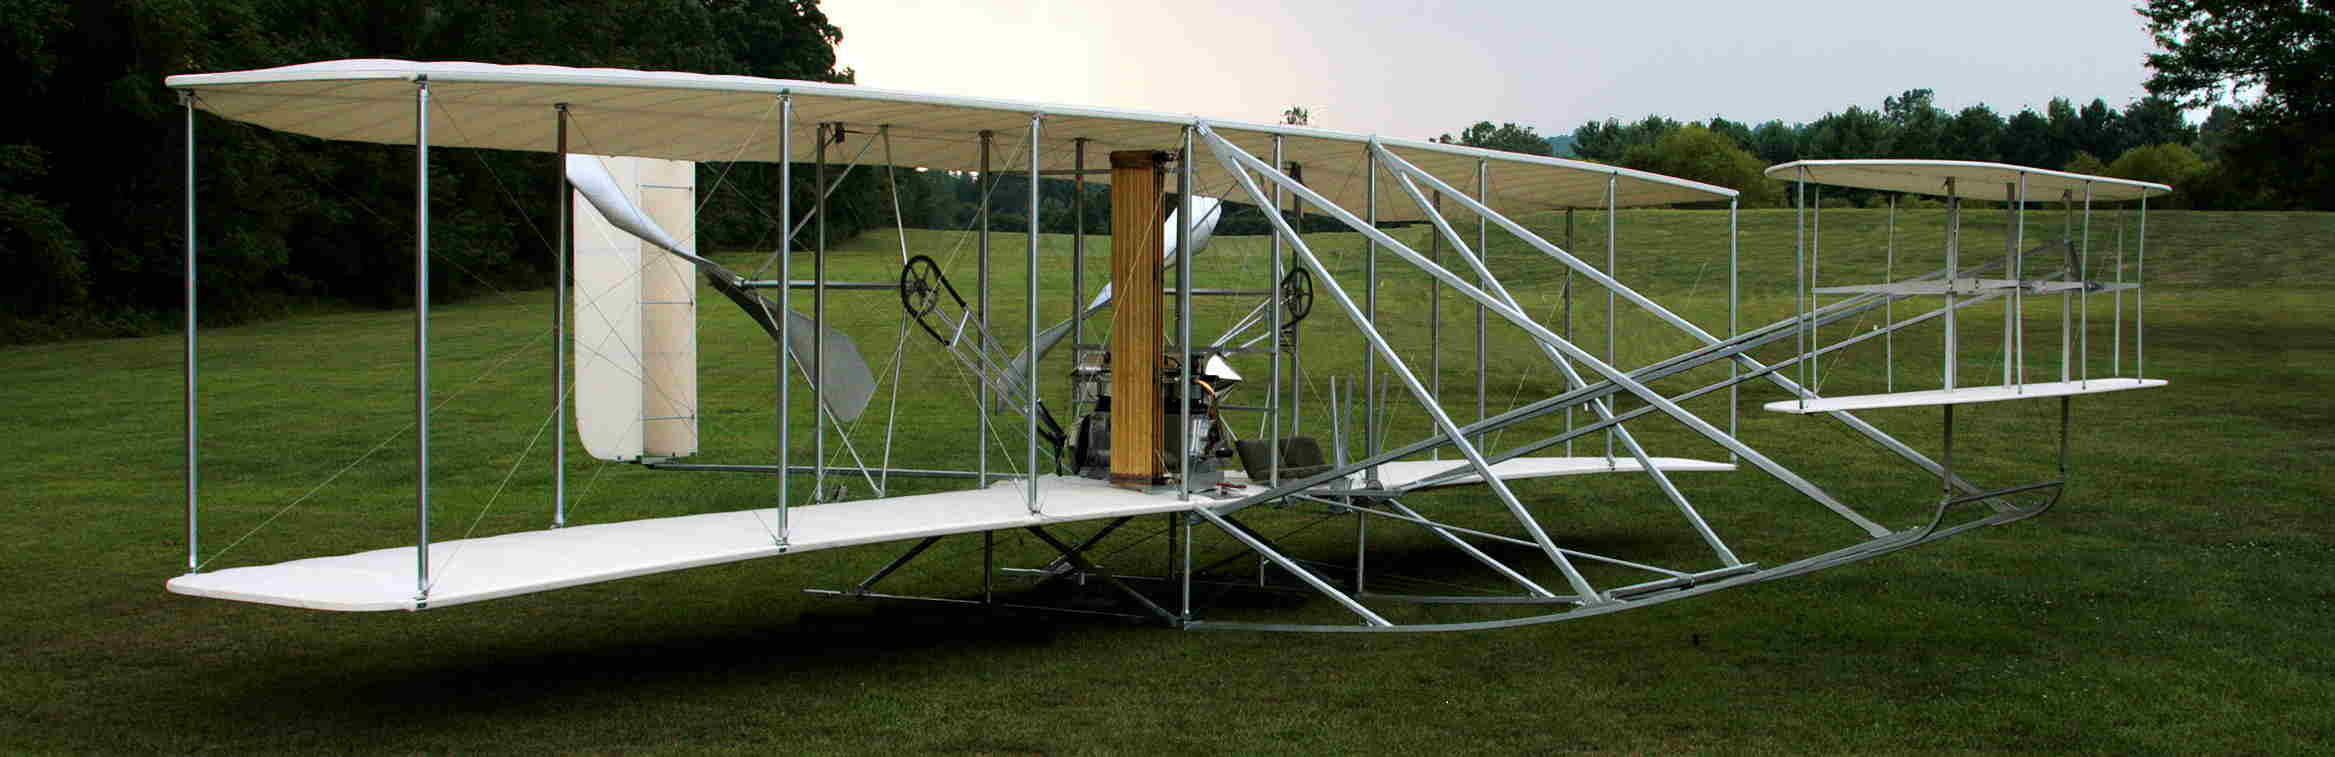 photo of full scale Wright biplane replica